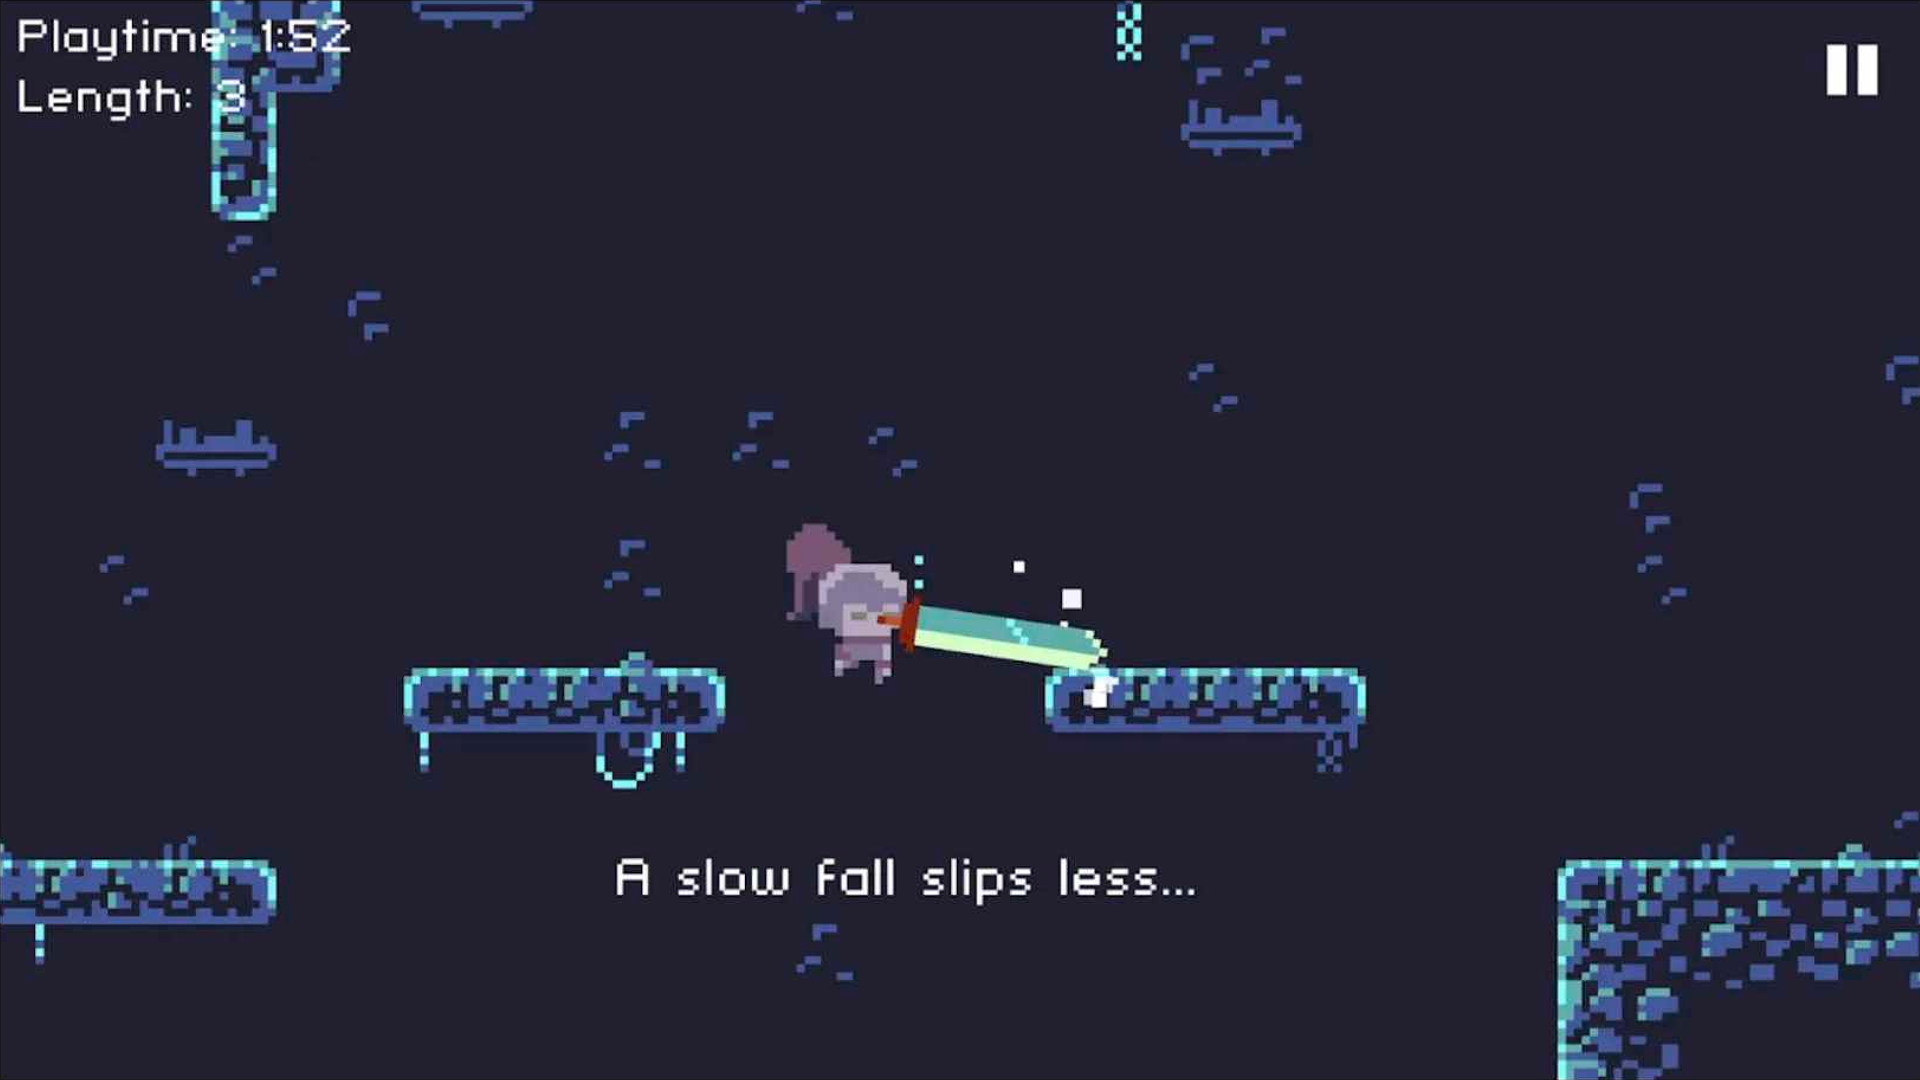 Deepest Sword screenshot game